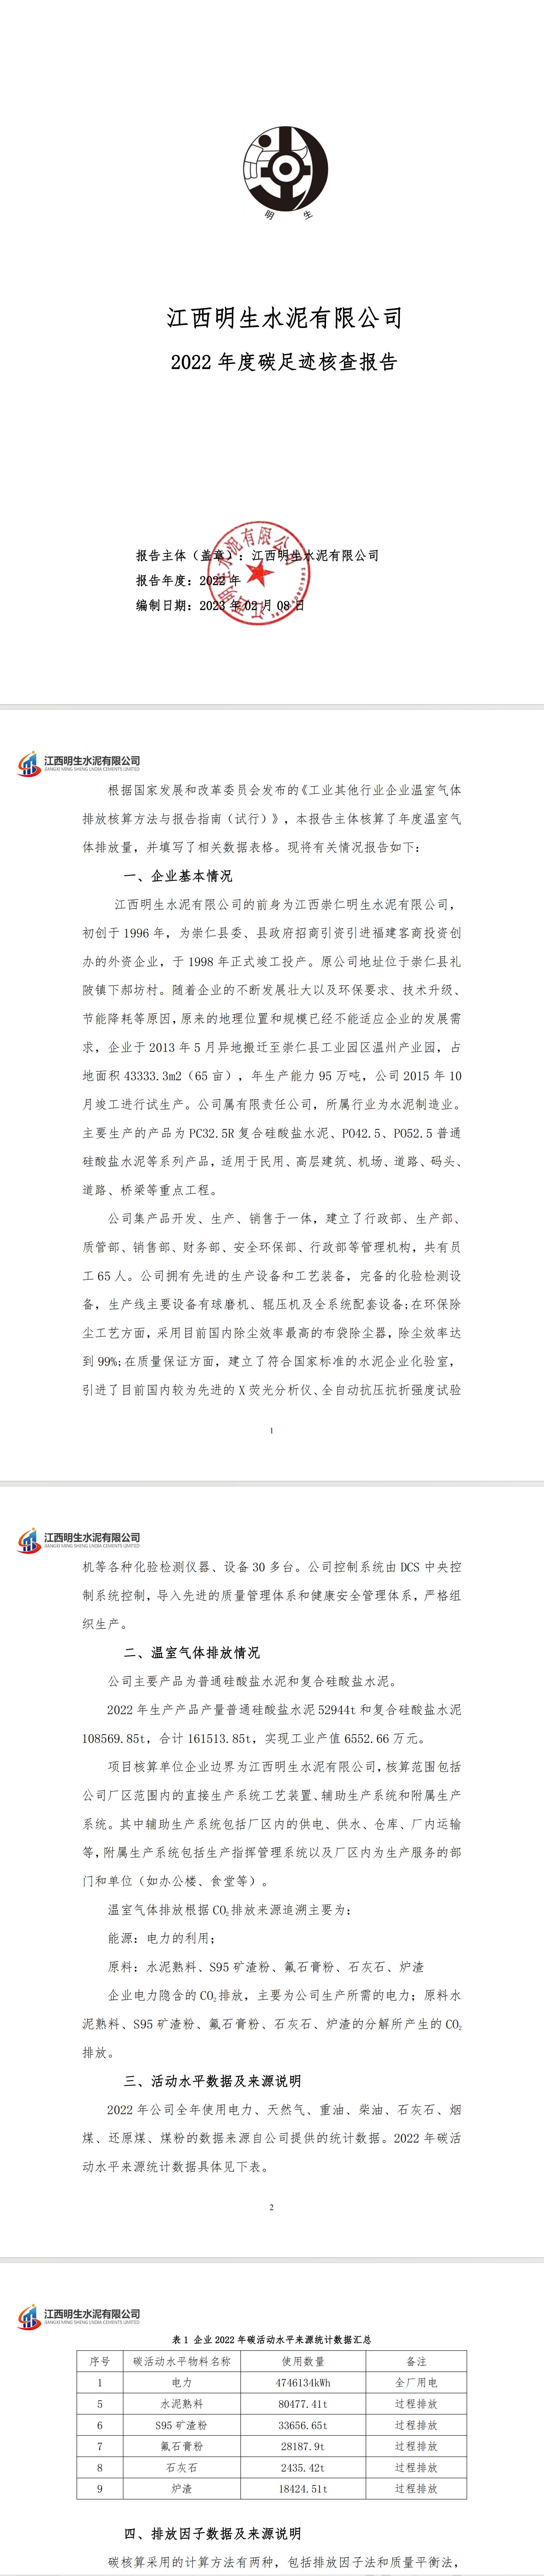 AG电子竞技俱乐部（中国）股份有限公司官网2022年度碳足迹核查报告